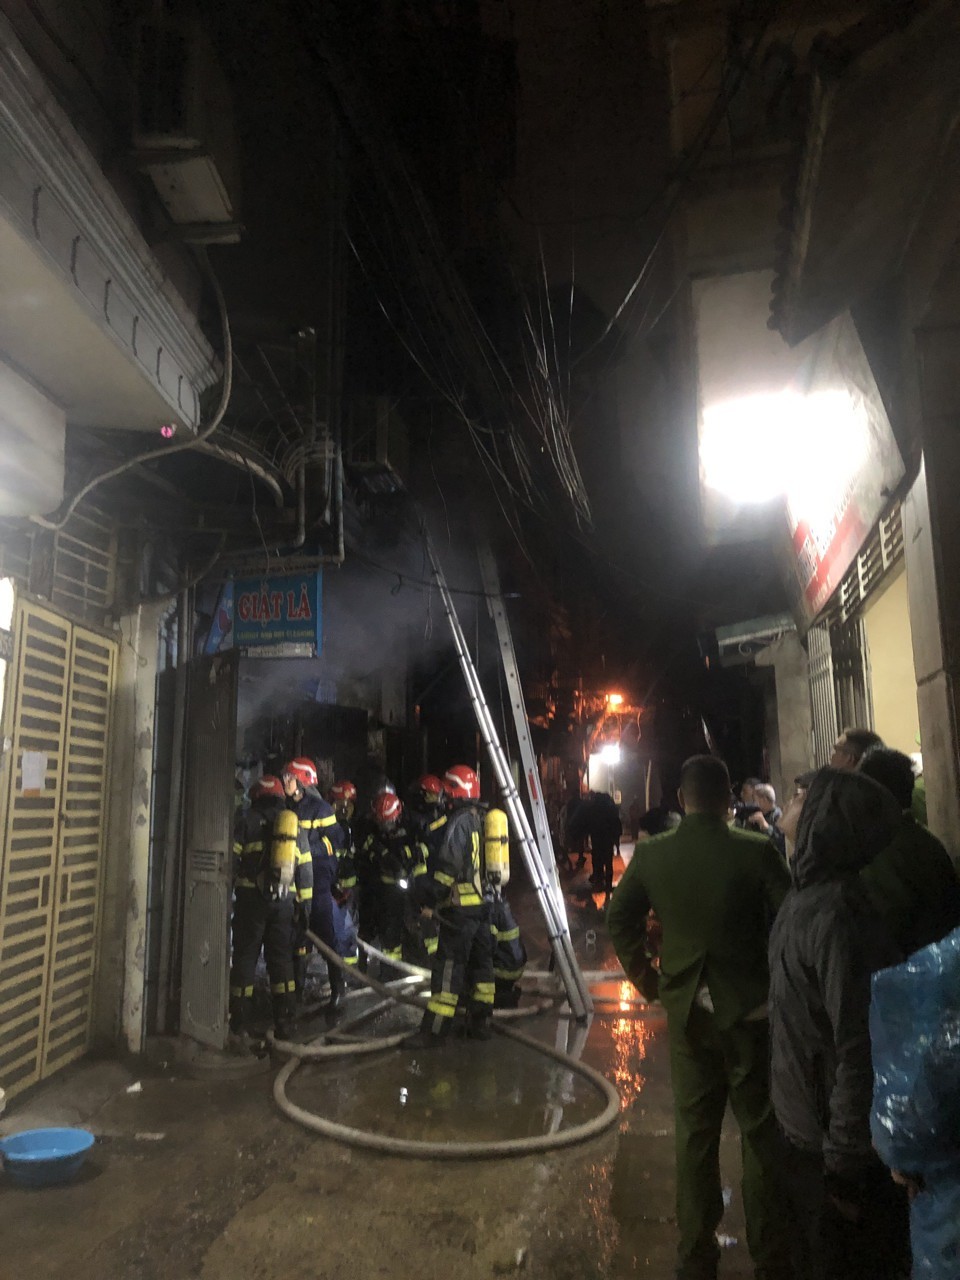 Hà Nội: Cắt “chuồng cọp” giải cứu 3 người trong đám cháy ở quận Hai Bà Trưng